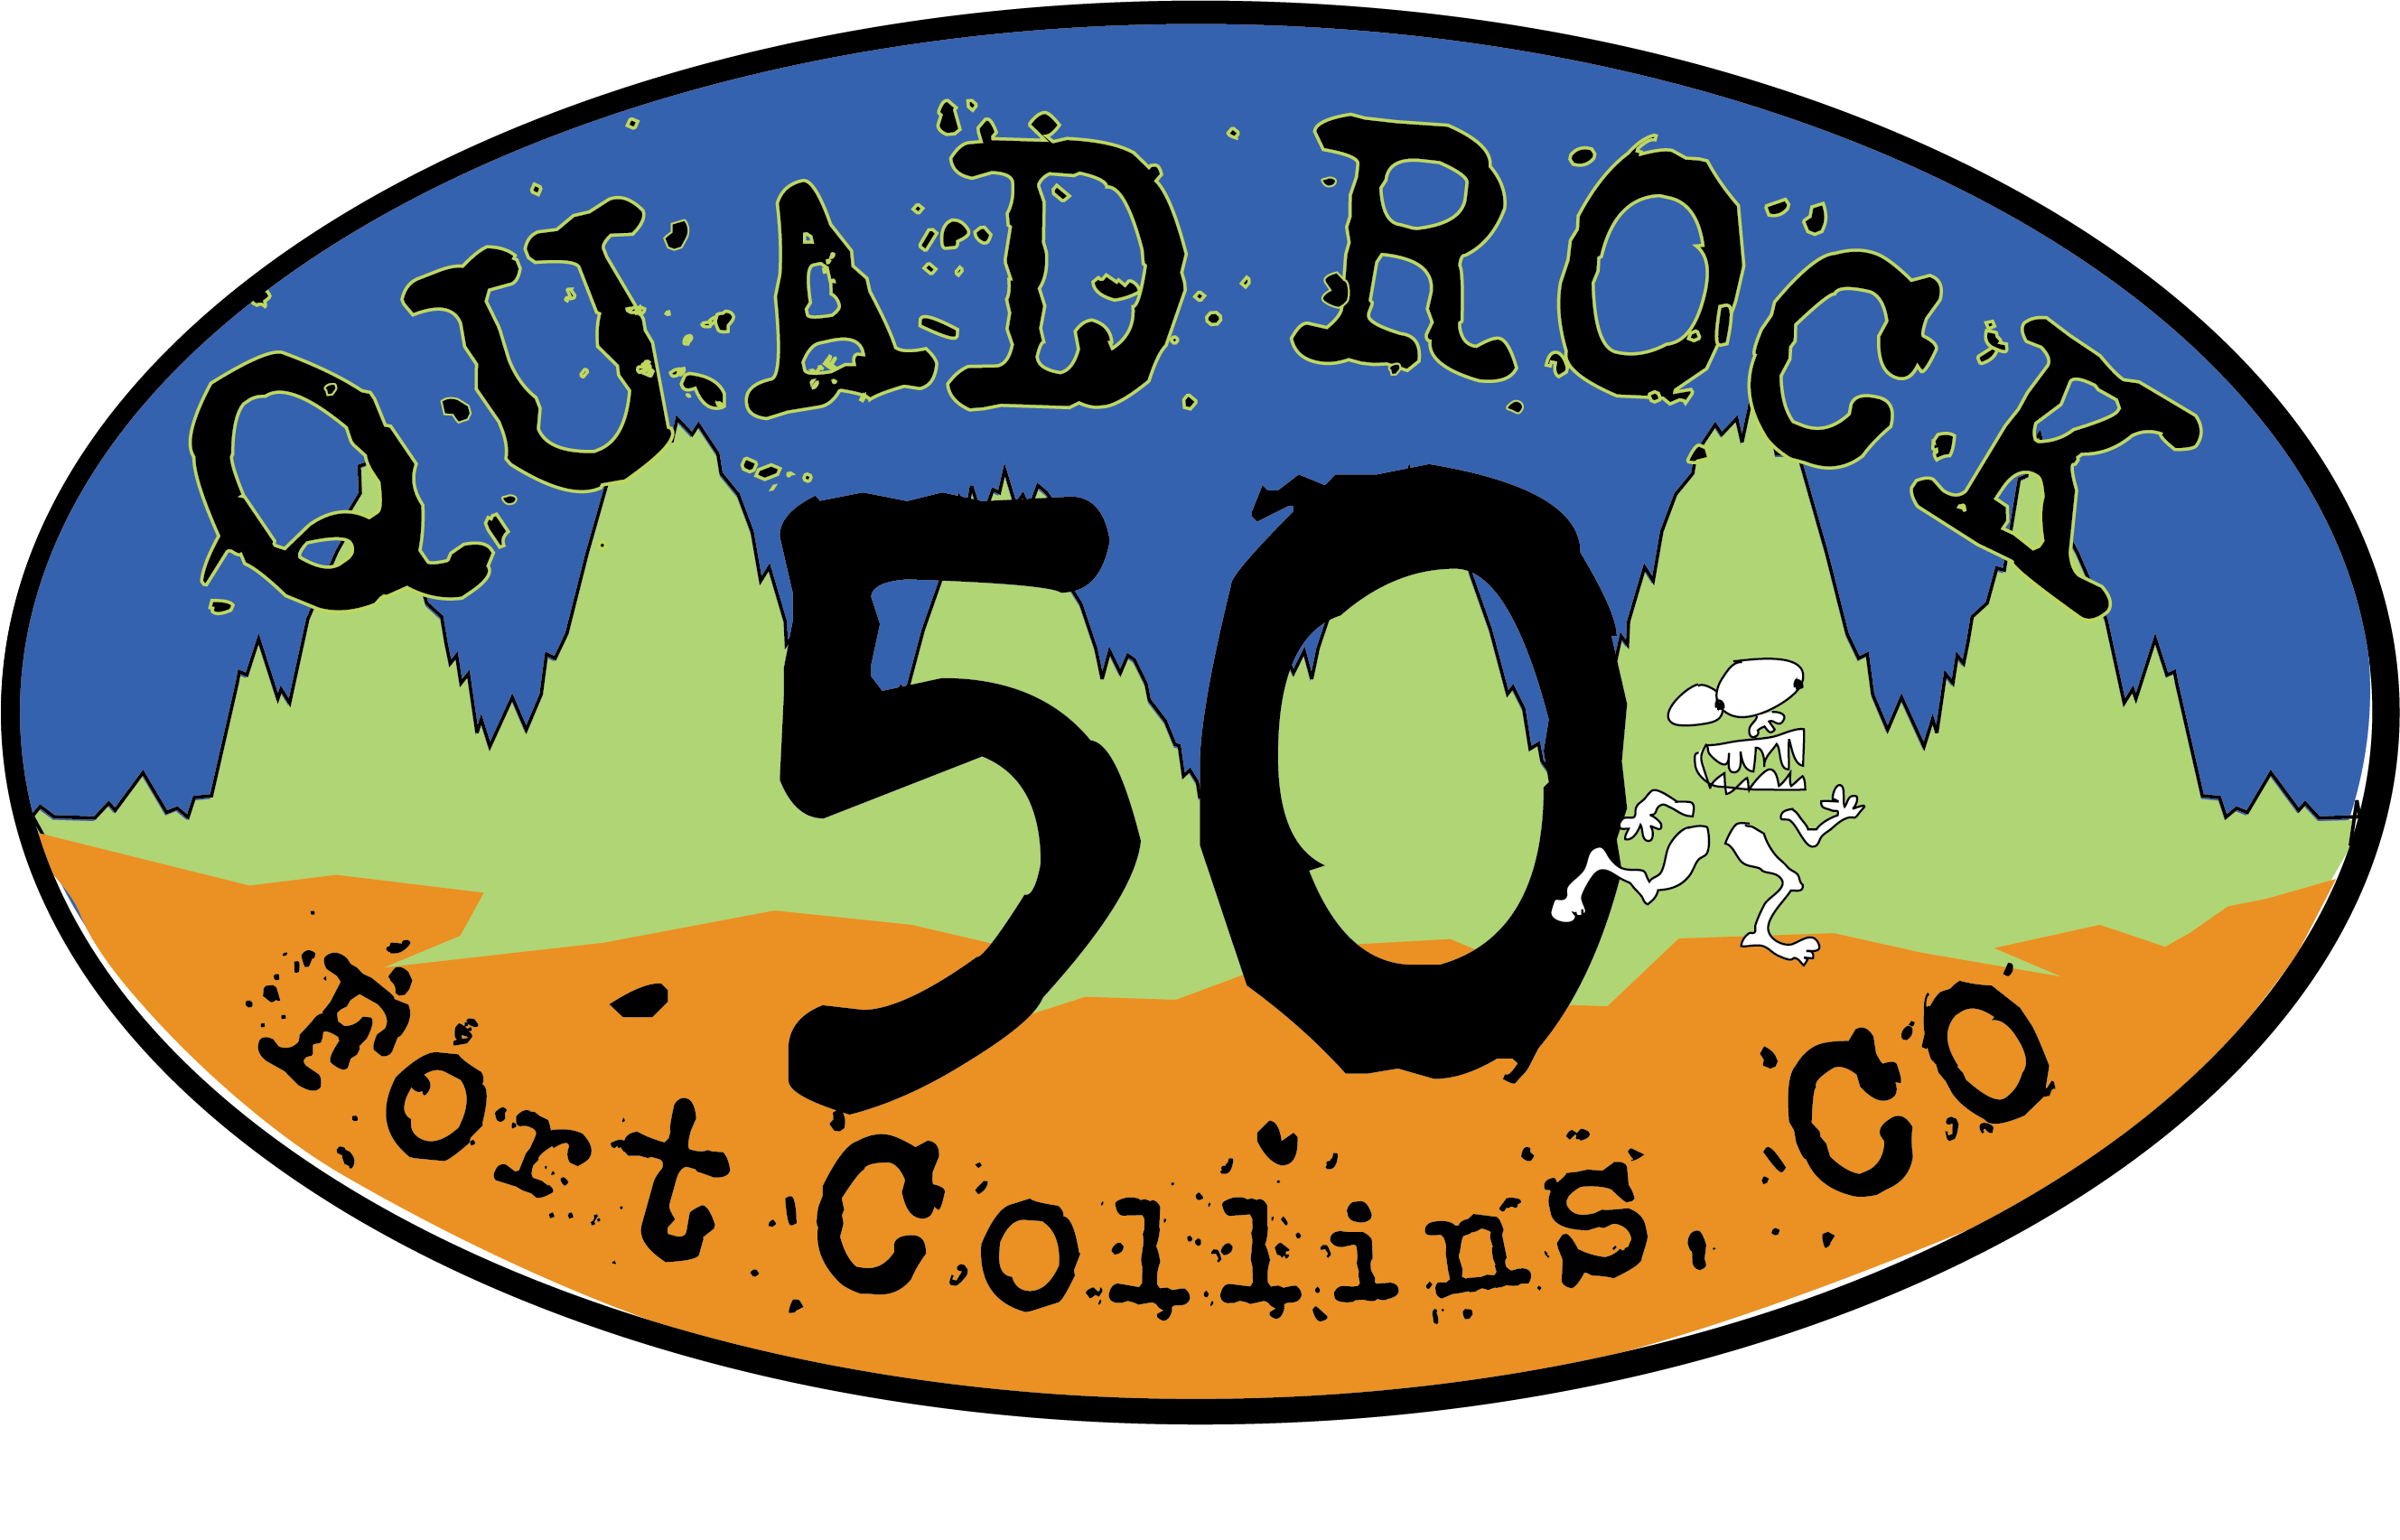 Quad Rock 50 logo on RaceRaves